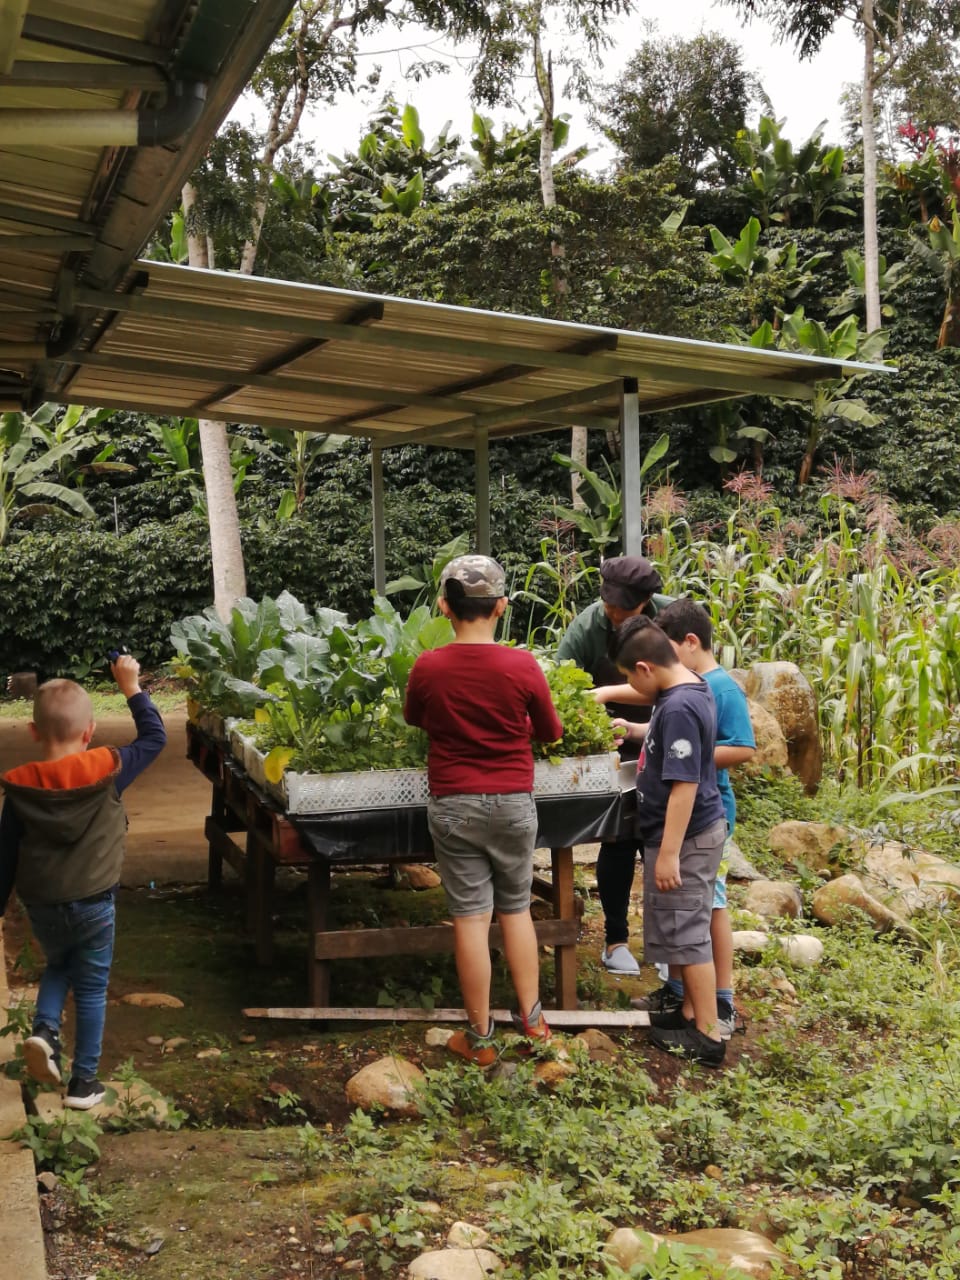 Casas de la Alegría – Childcare for children of
coffee pickers